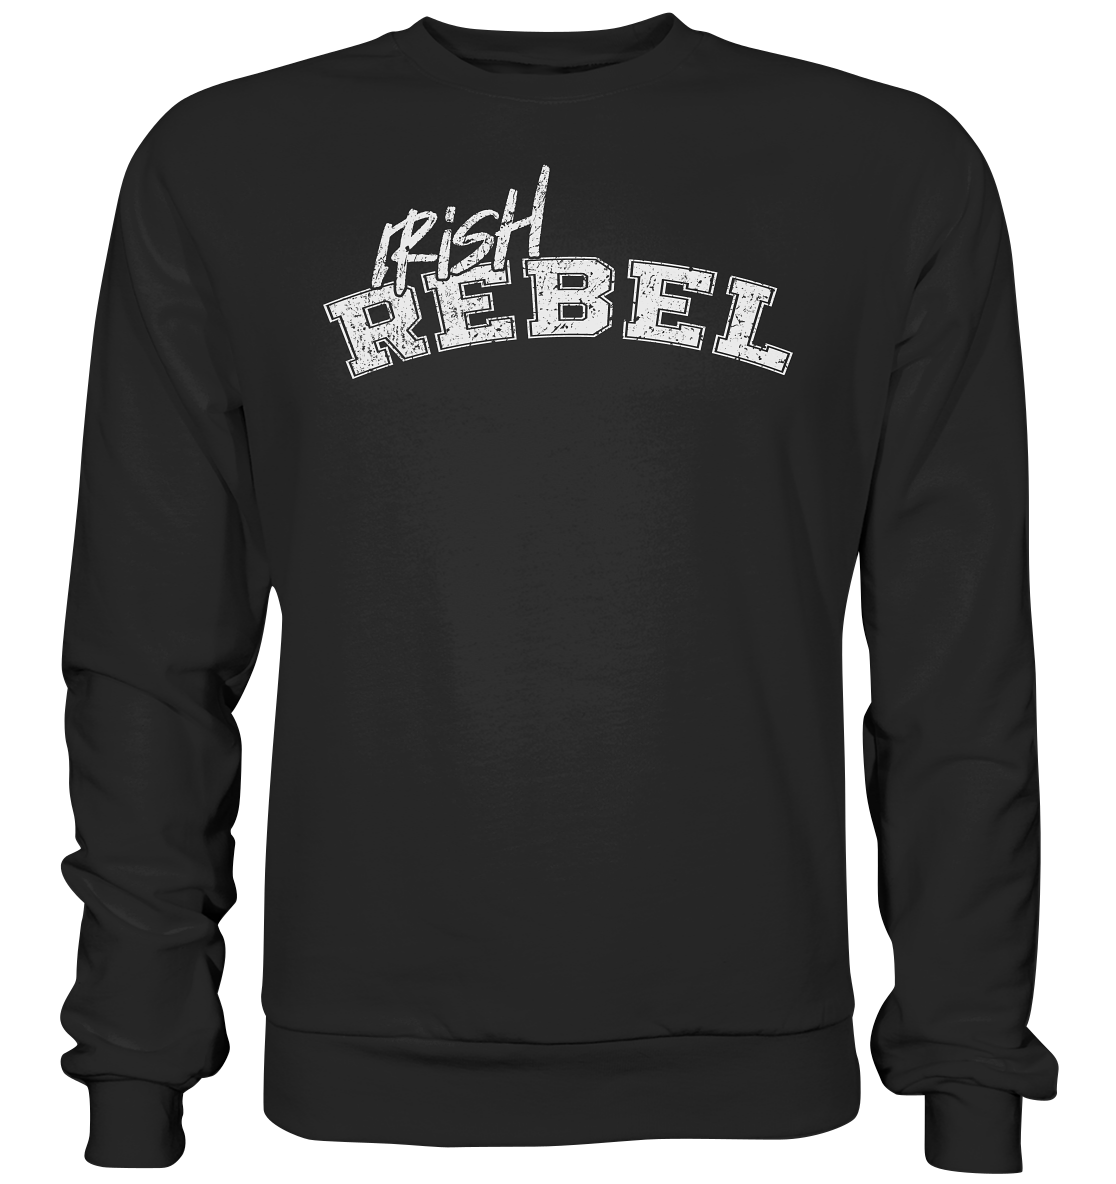 "Irish Rebel" - Premium Sweatshirt